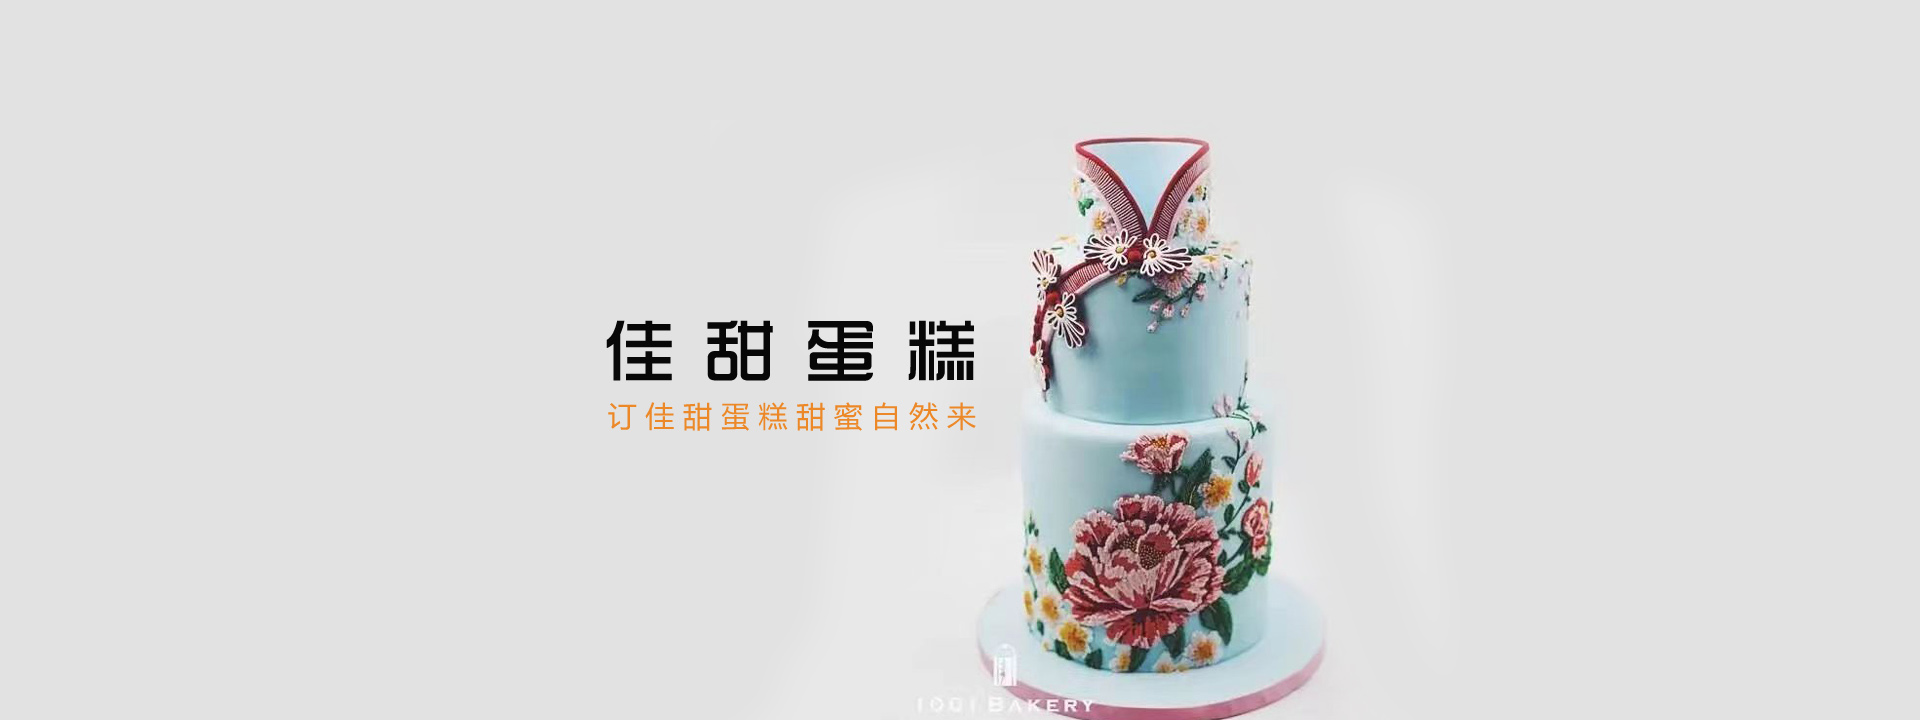 重庆沙坪坝蛋糕店|大学城蛋糕预定|汇美佳甜蛋糕预定